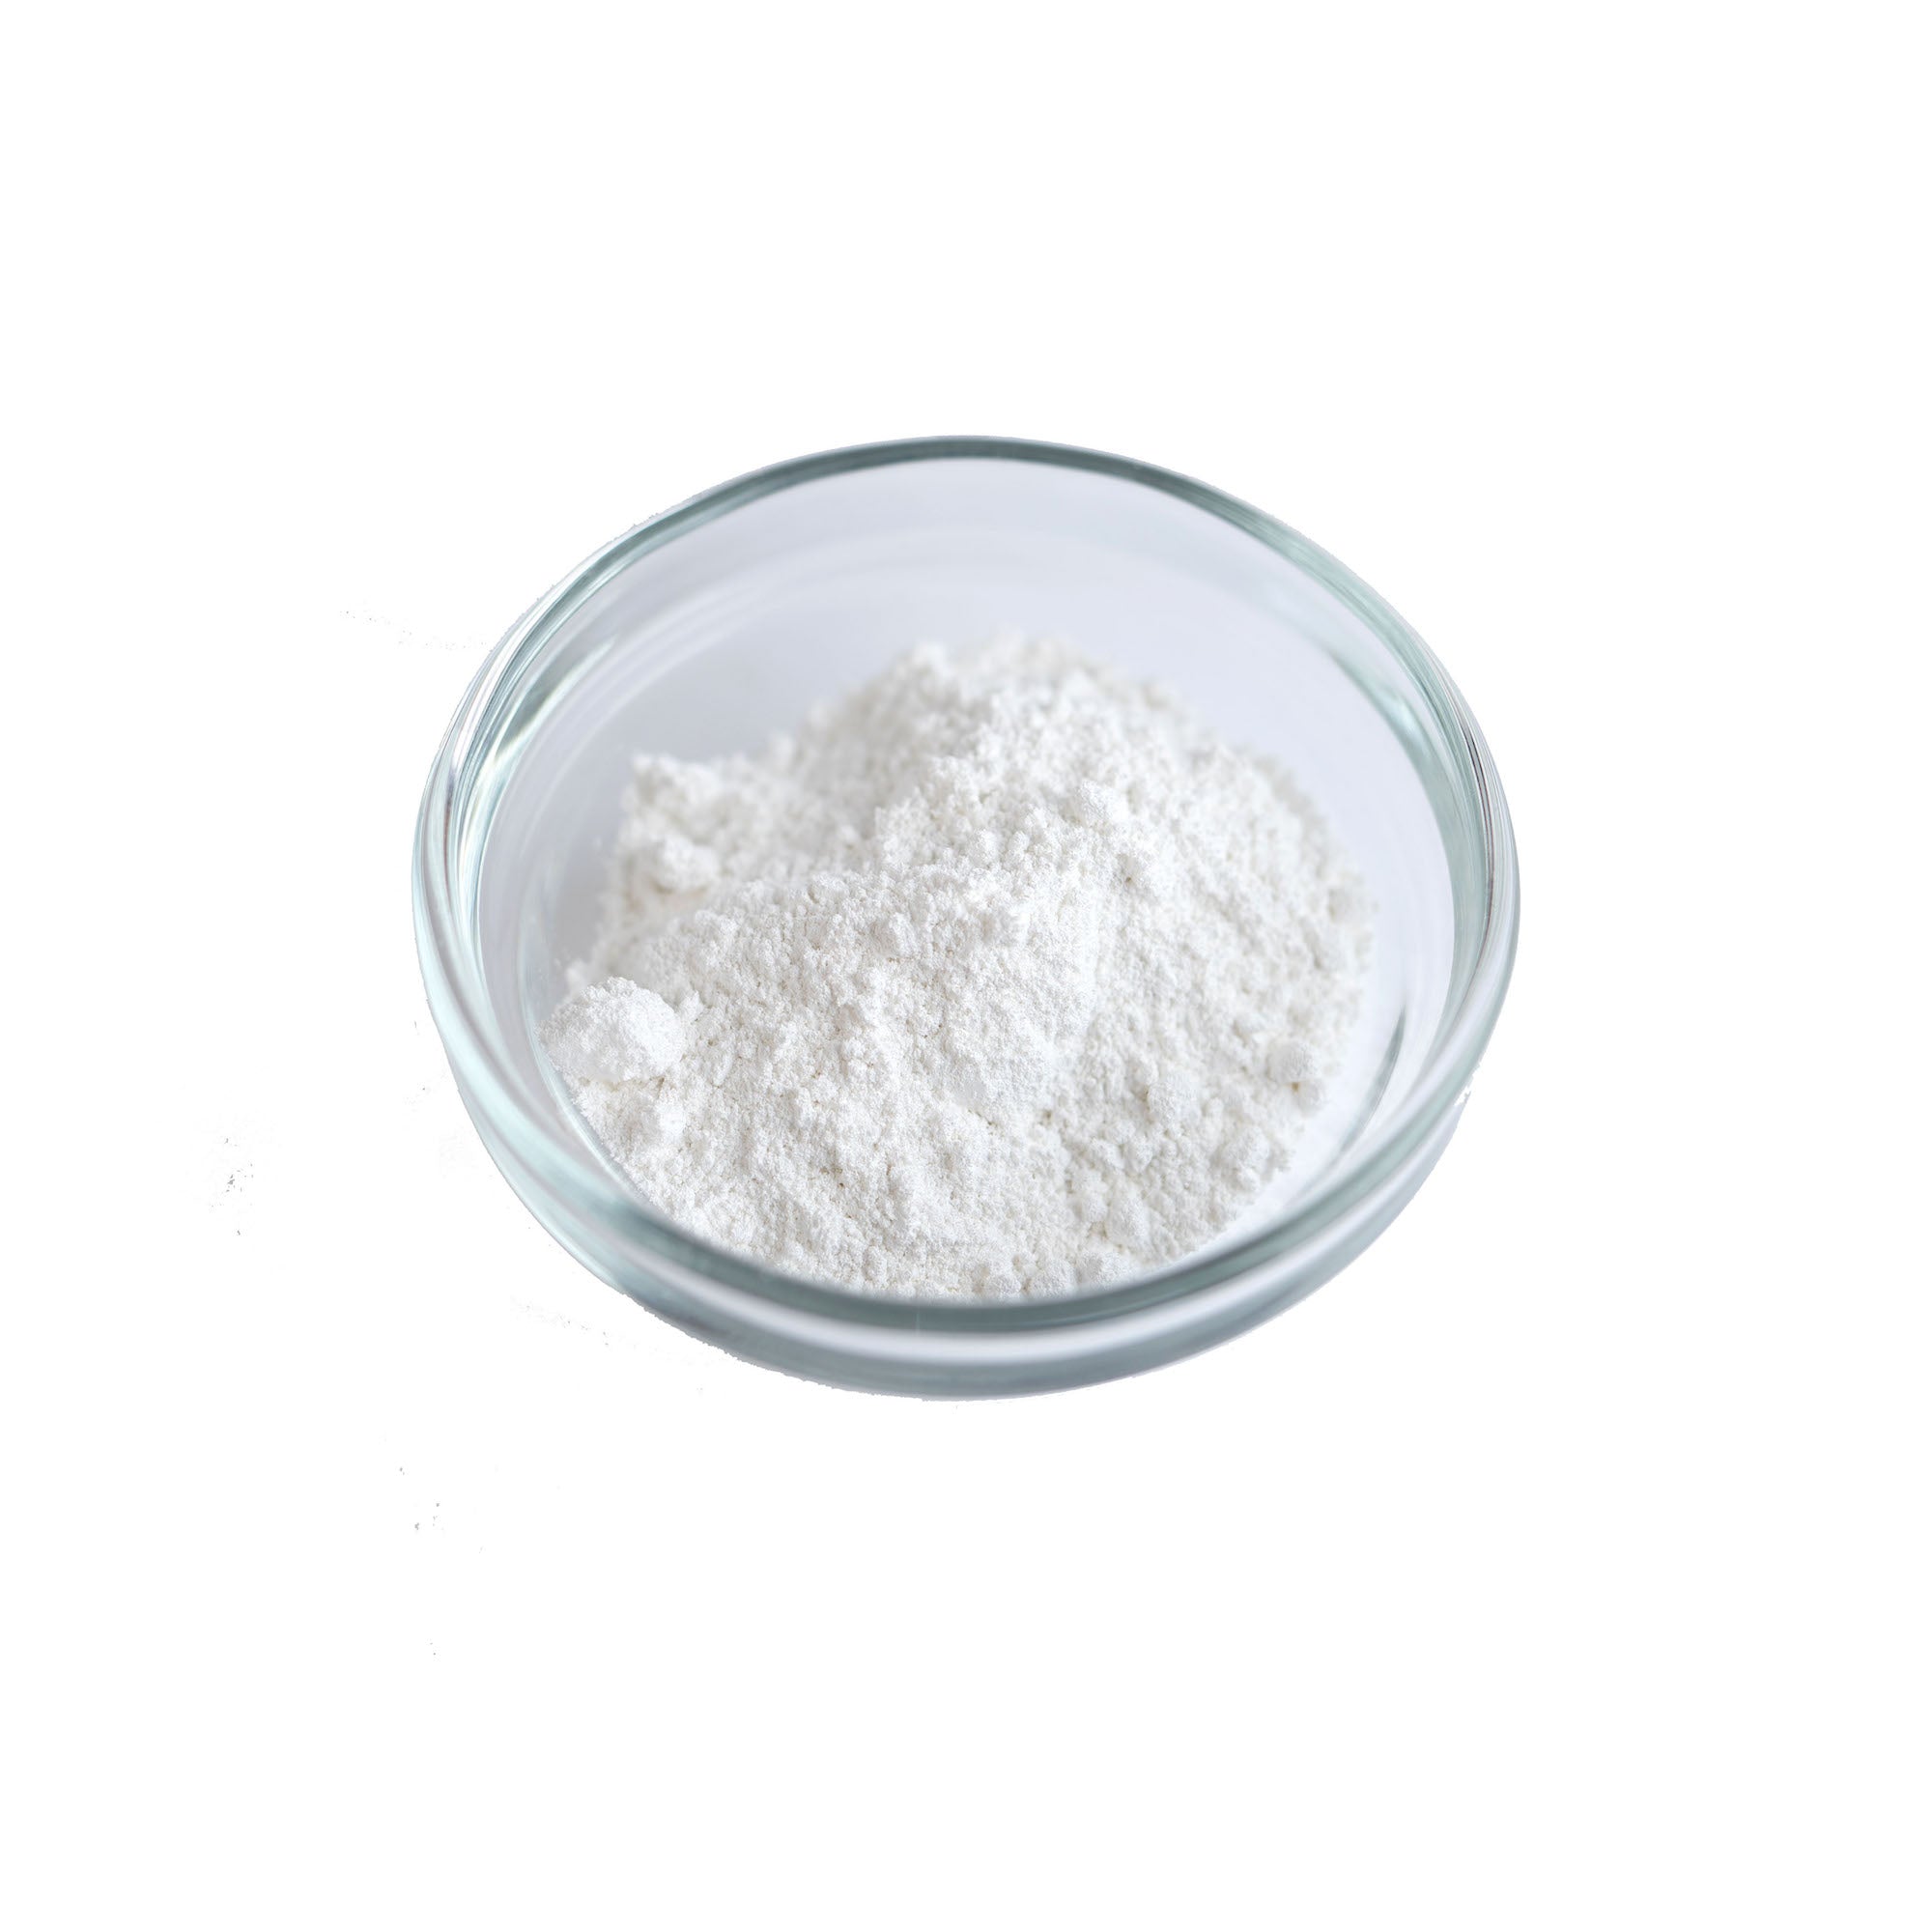 GUSTA SUPPLIES White Food Colouring Powder, Titanium Dioxide